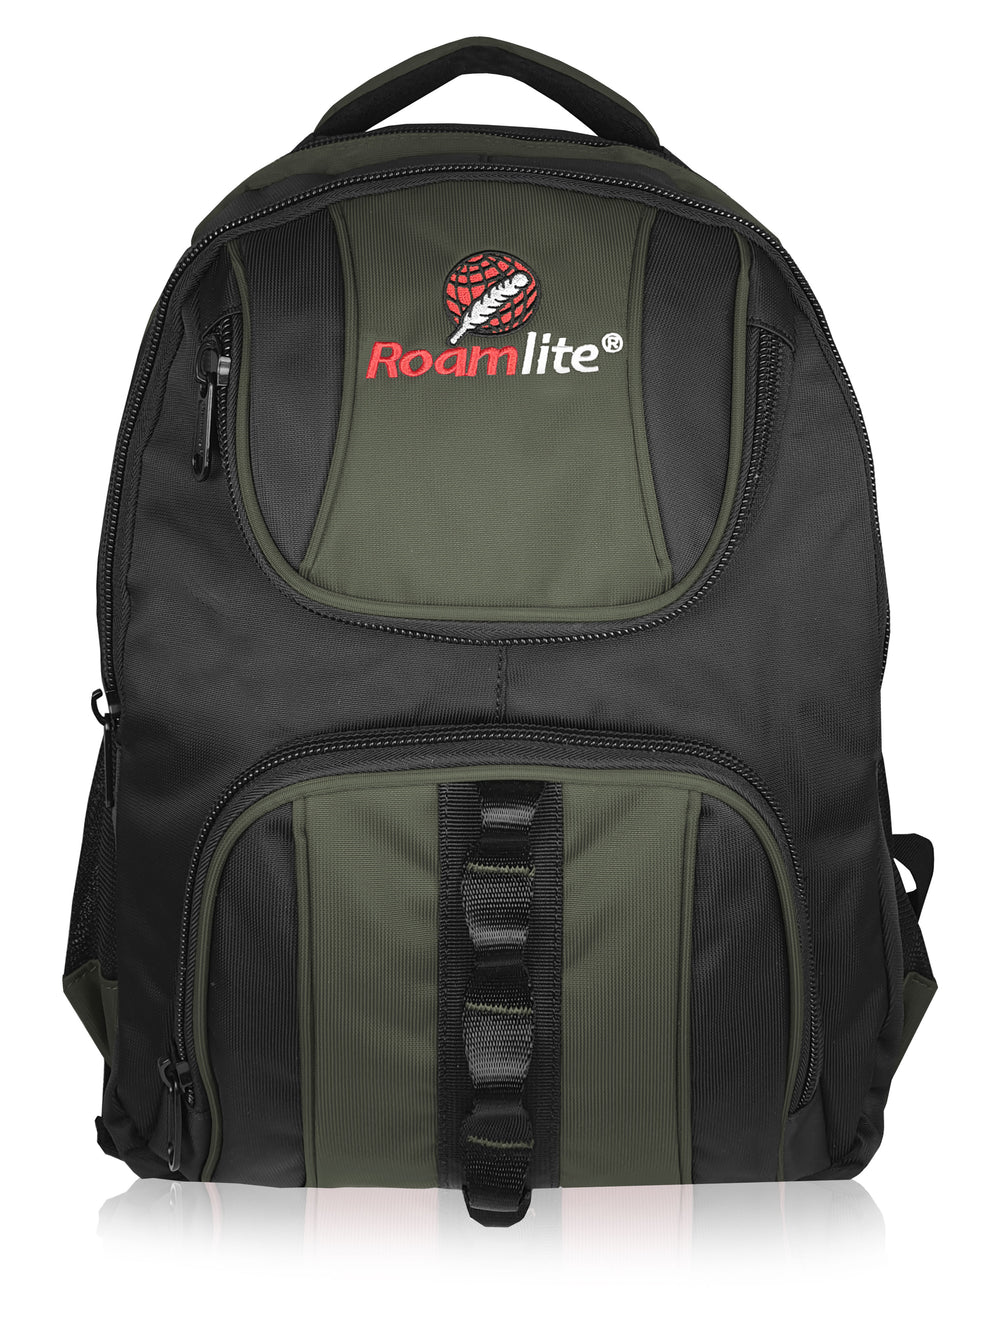 Roamlite School Backpack Black Green Polyester RL18 front